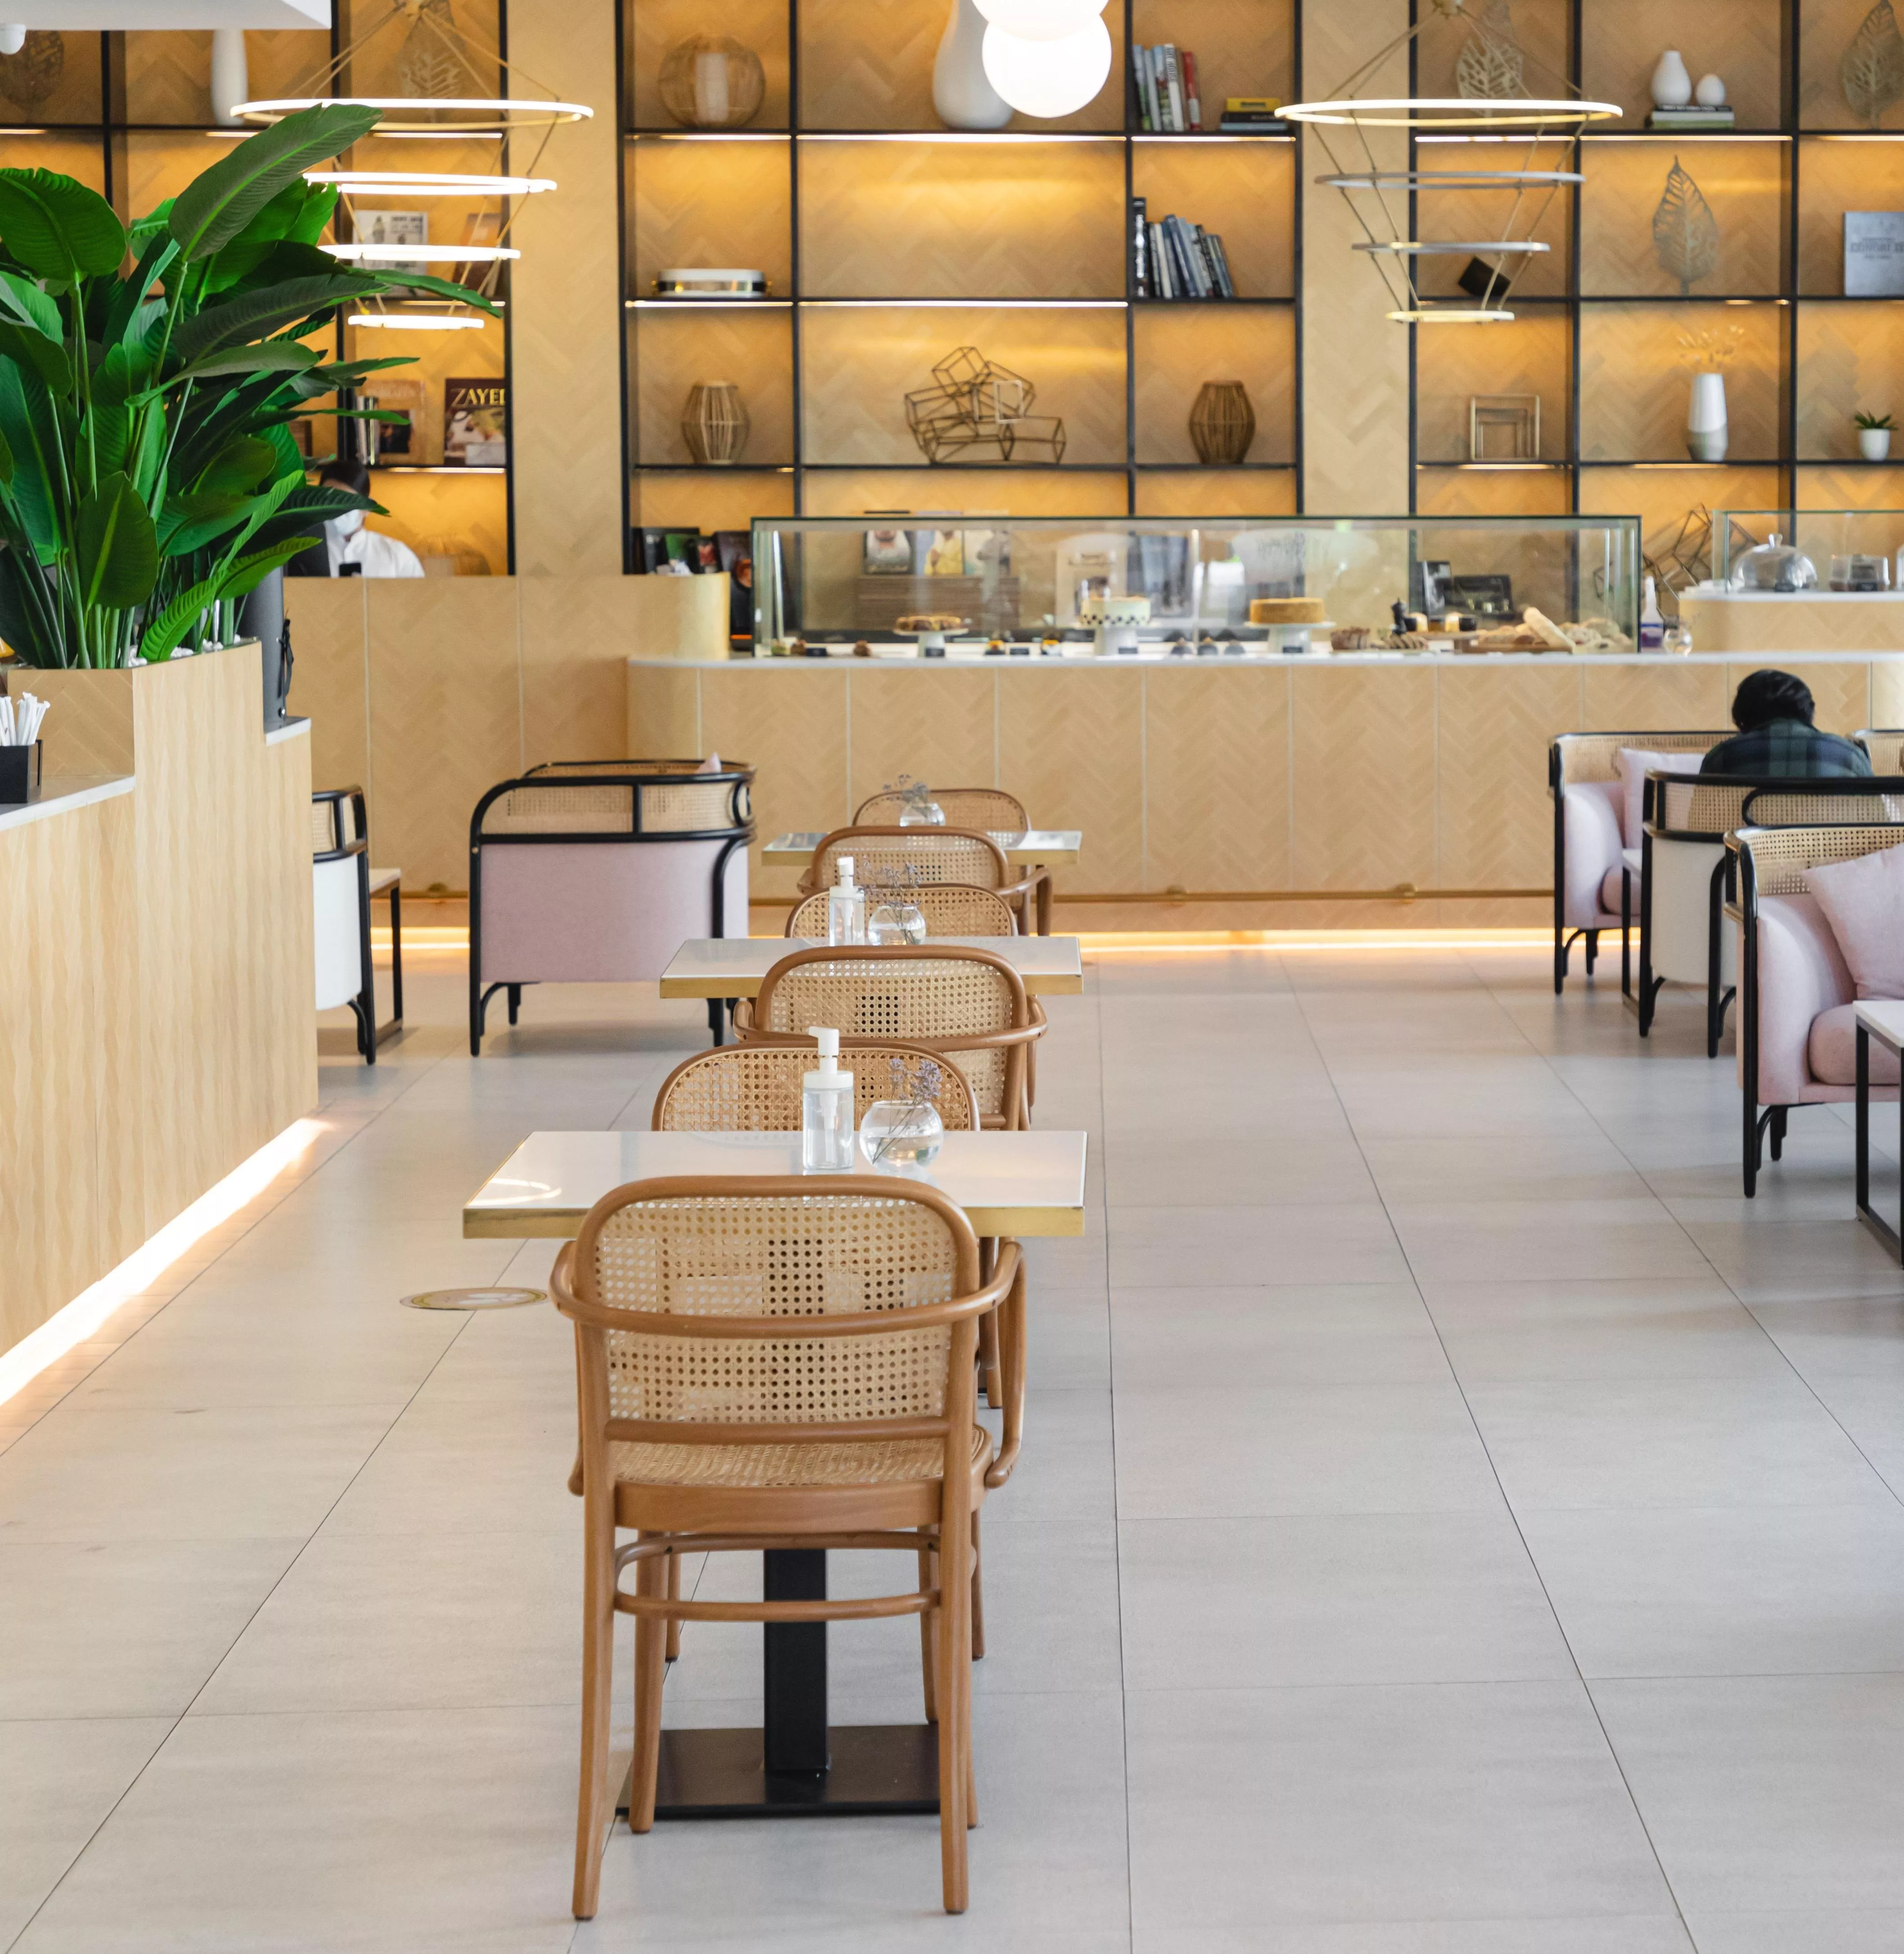 أفضل 12 مطعم في دبي لتناول الفطور، عليكِ زيارتها في أقرب وقت